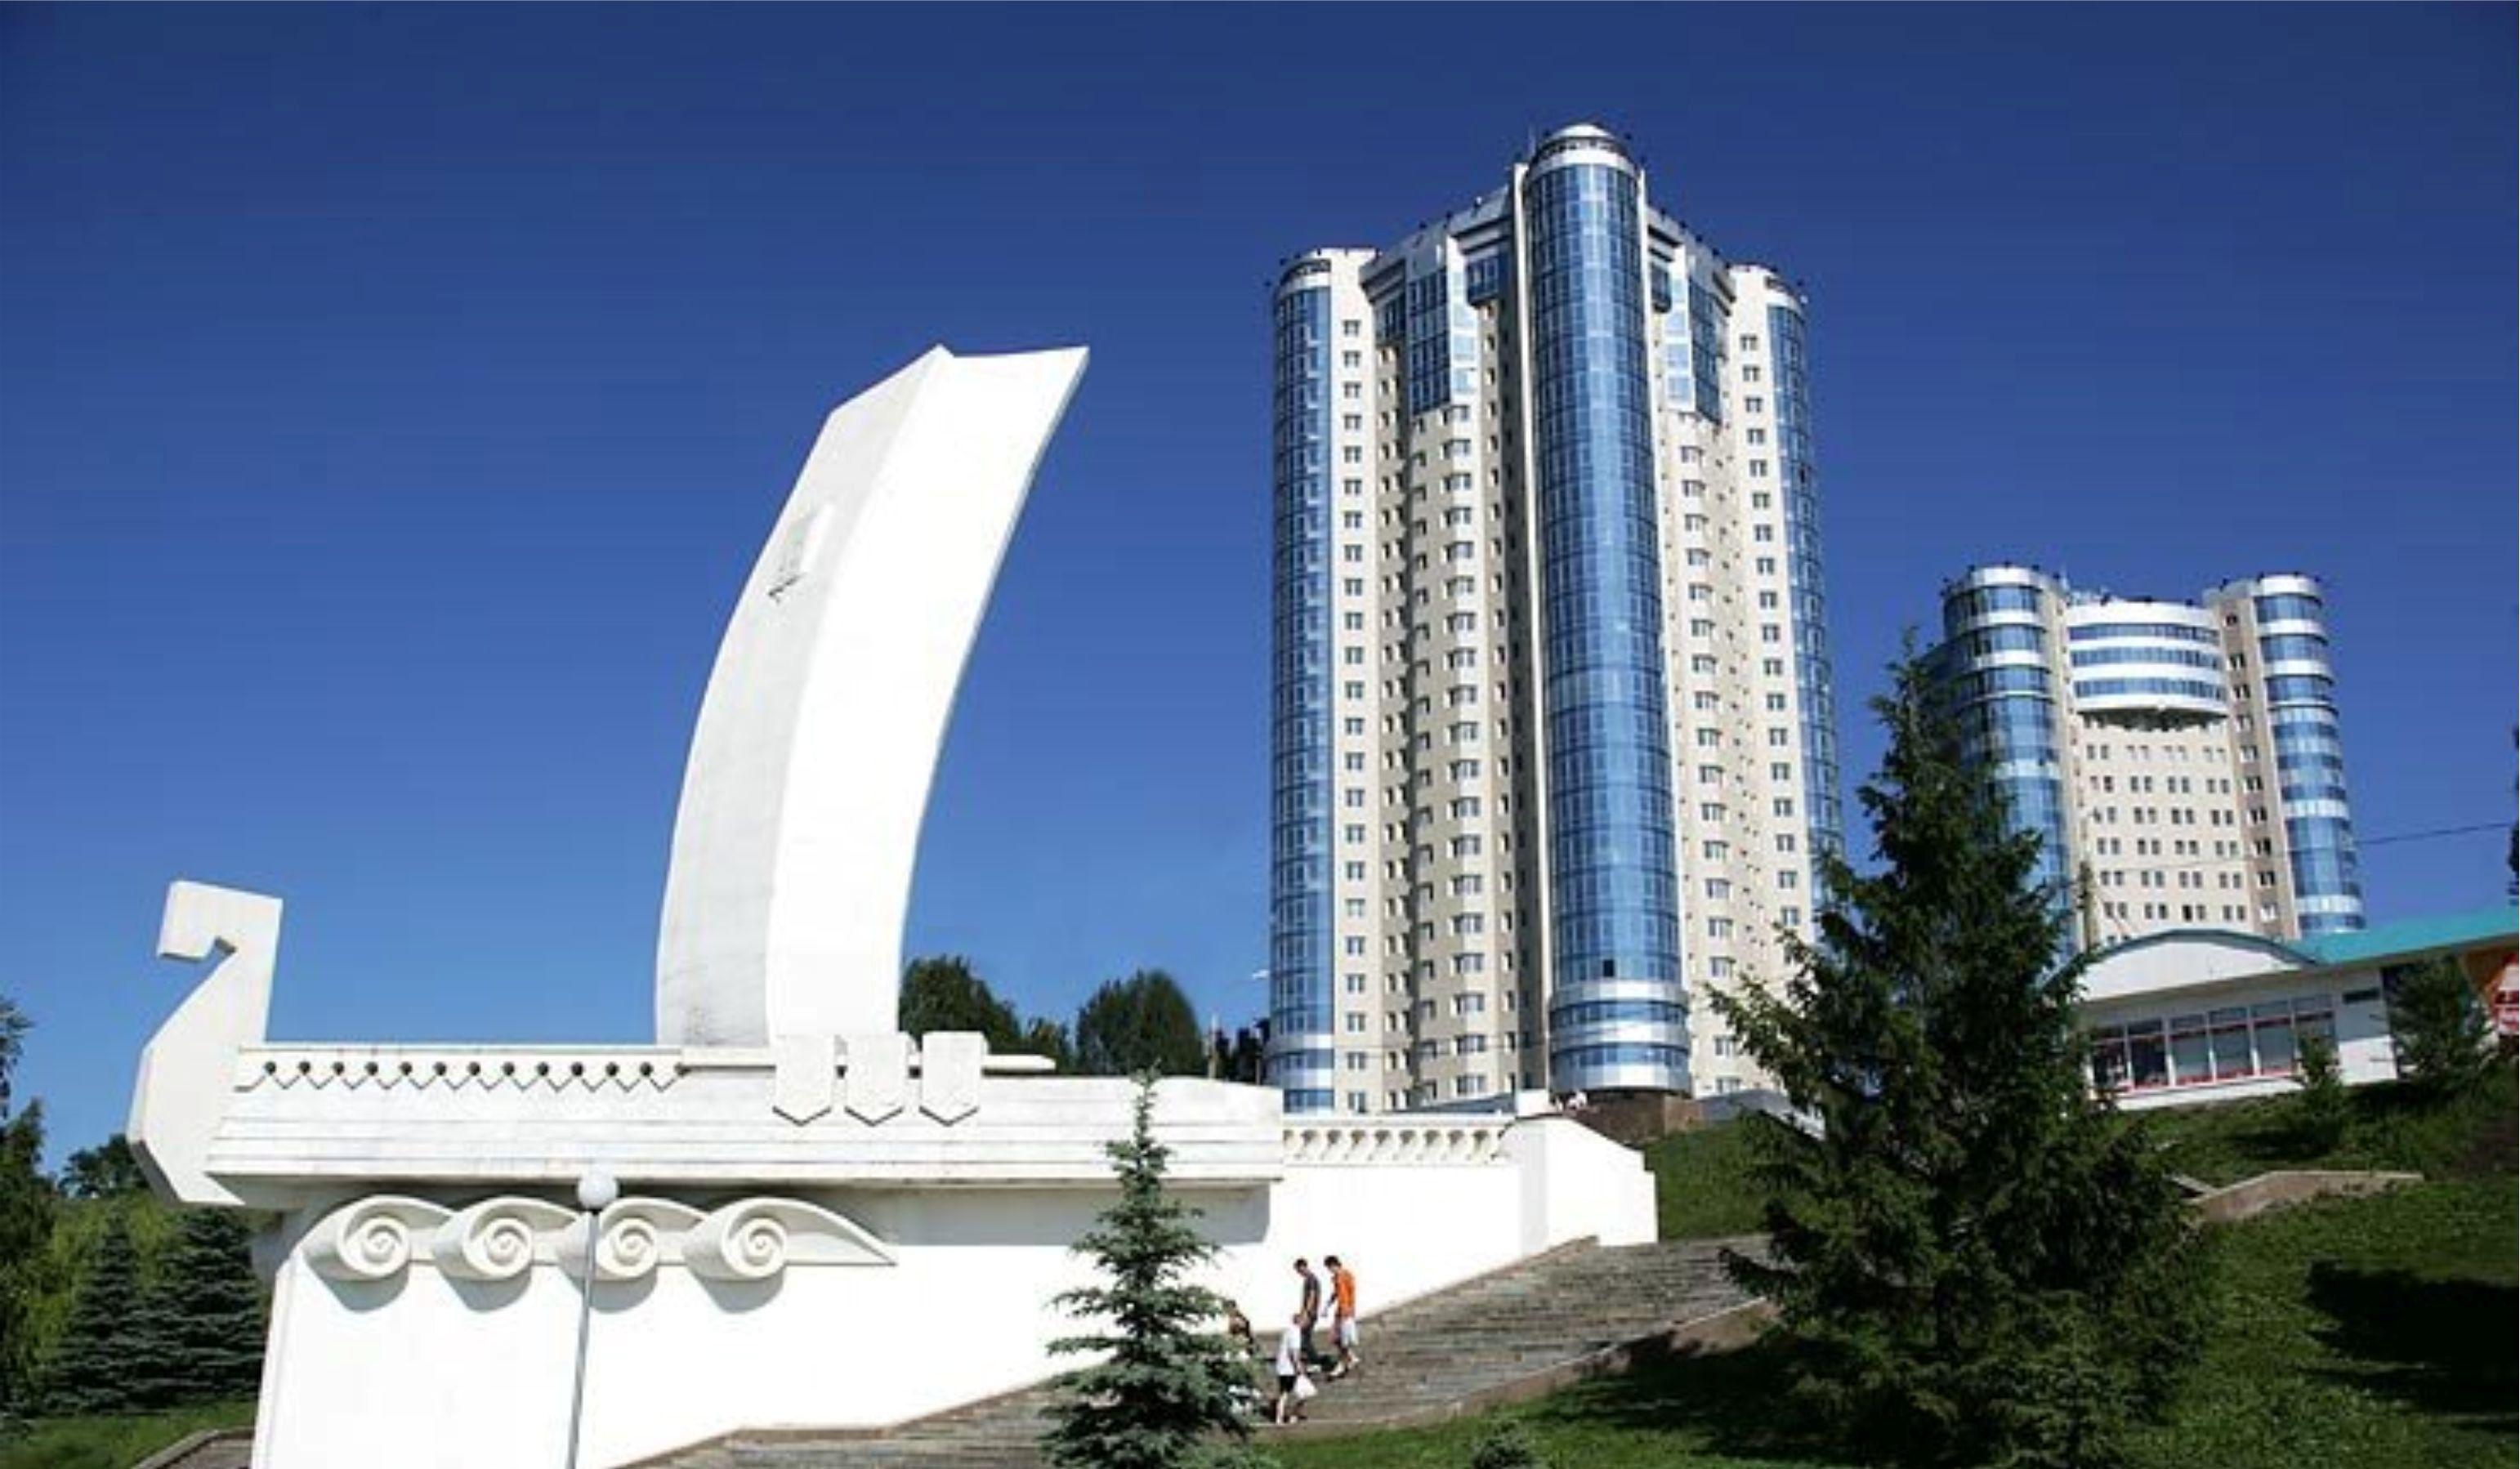 1 июля 2015 г. Монумент «Самарская Ладья» Самара. Стела Ладья Самара. Ладья Самара набережная. Ладья Самара памятник.